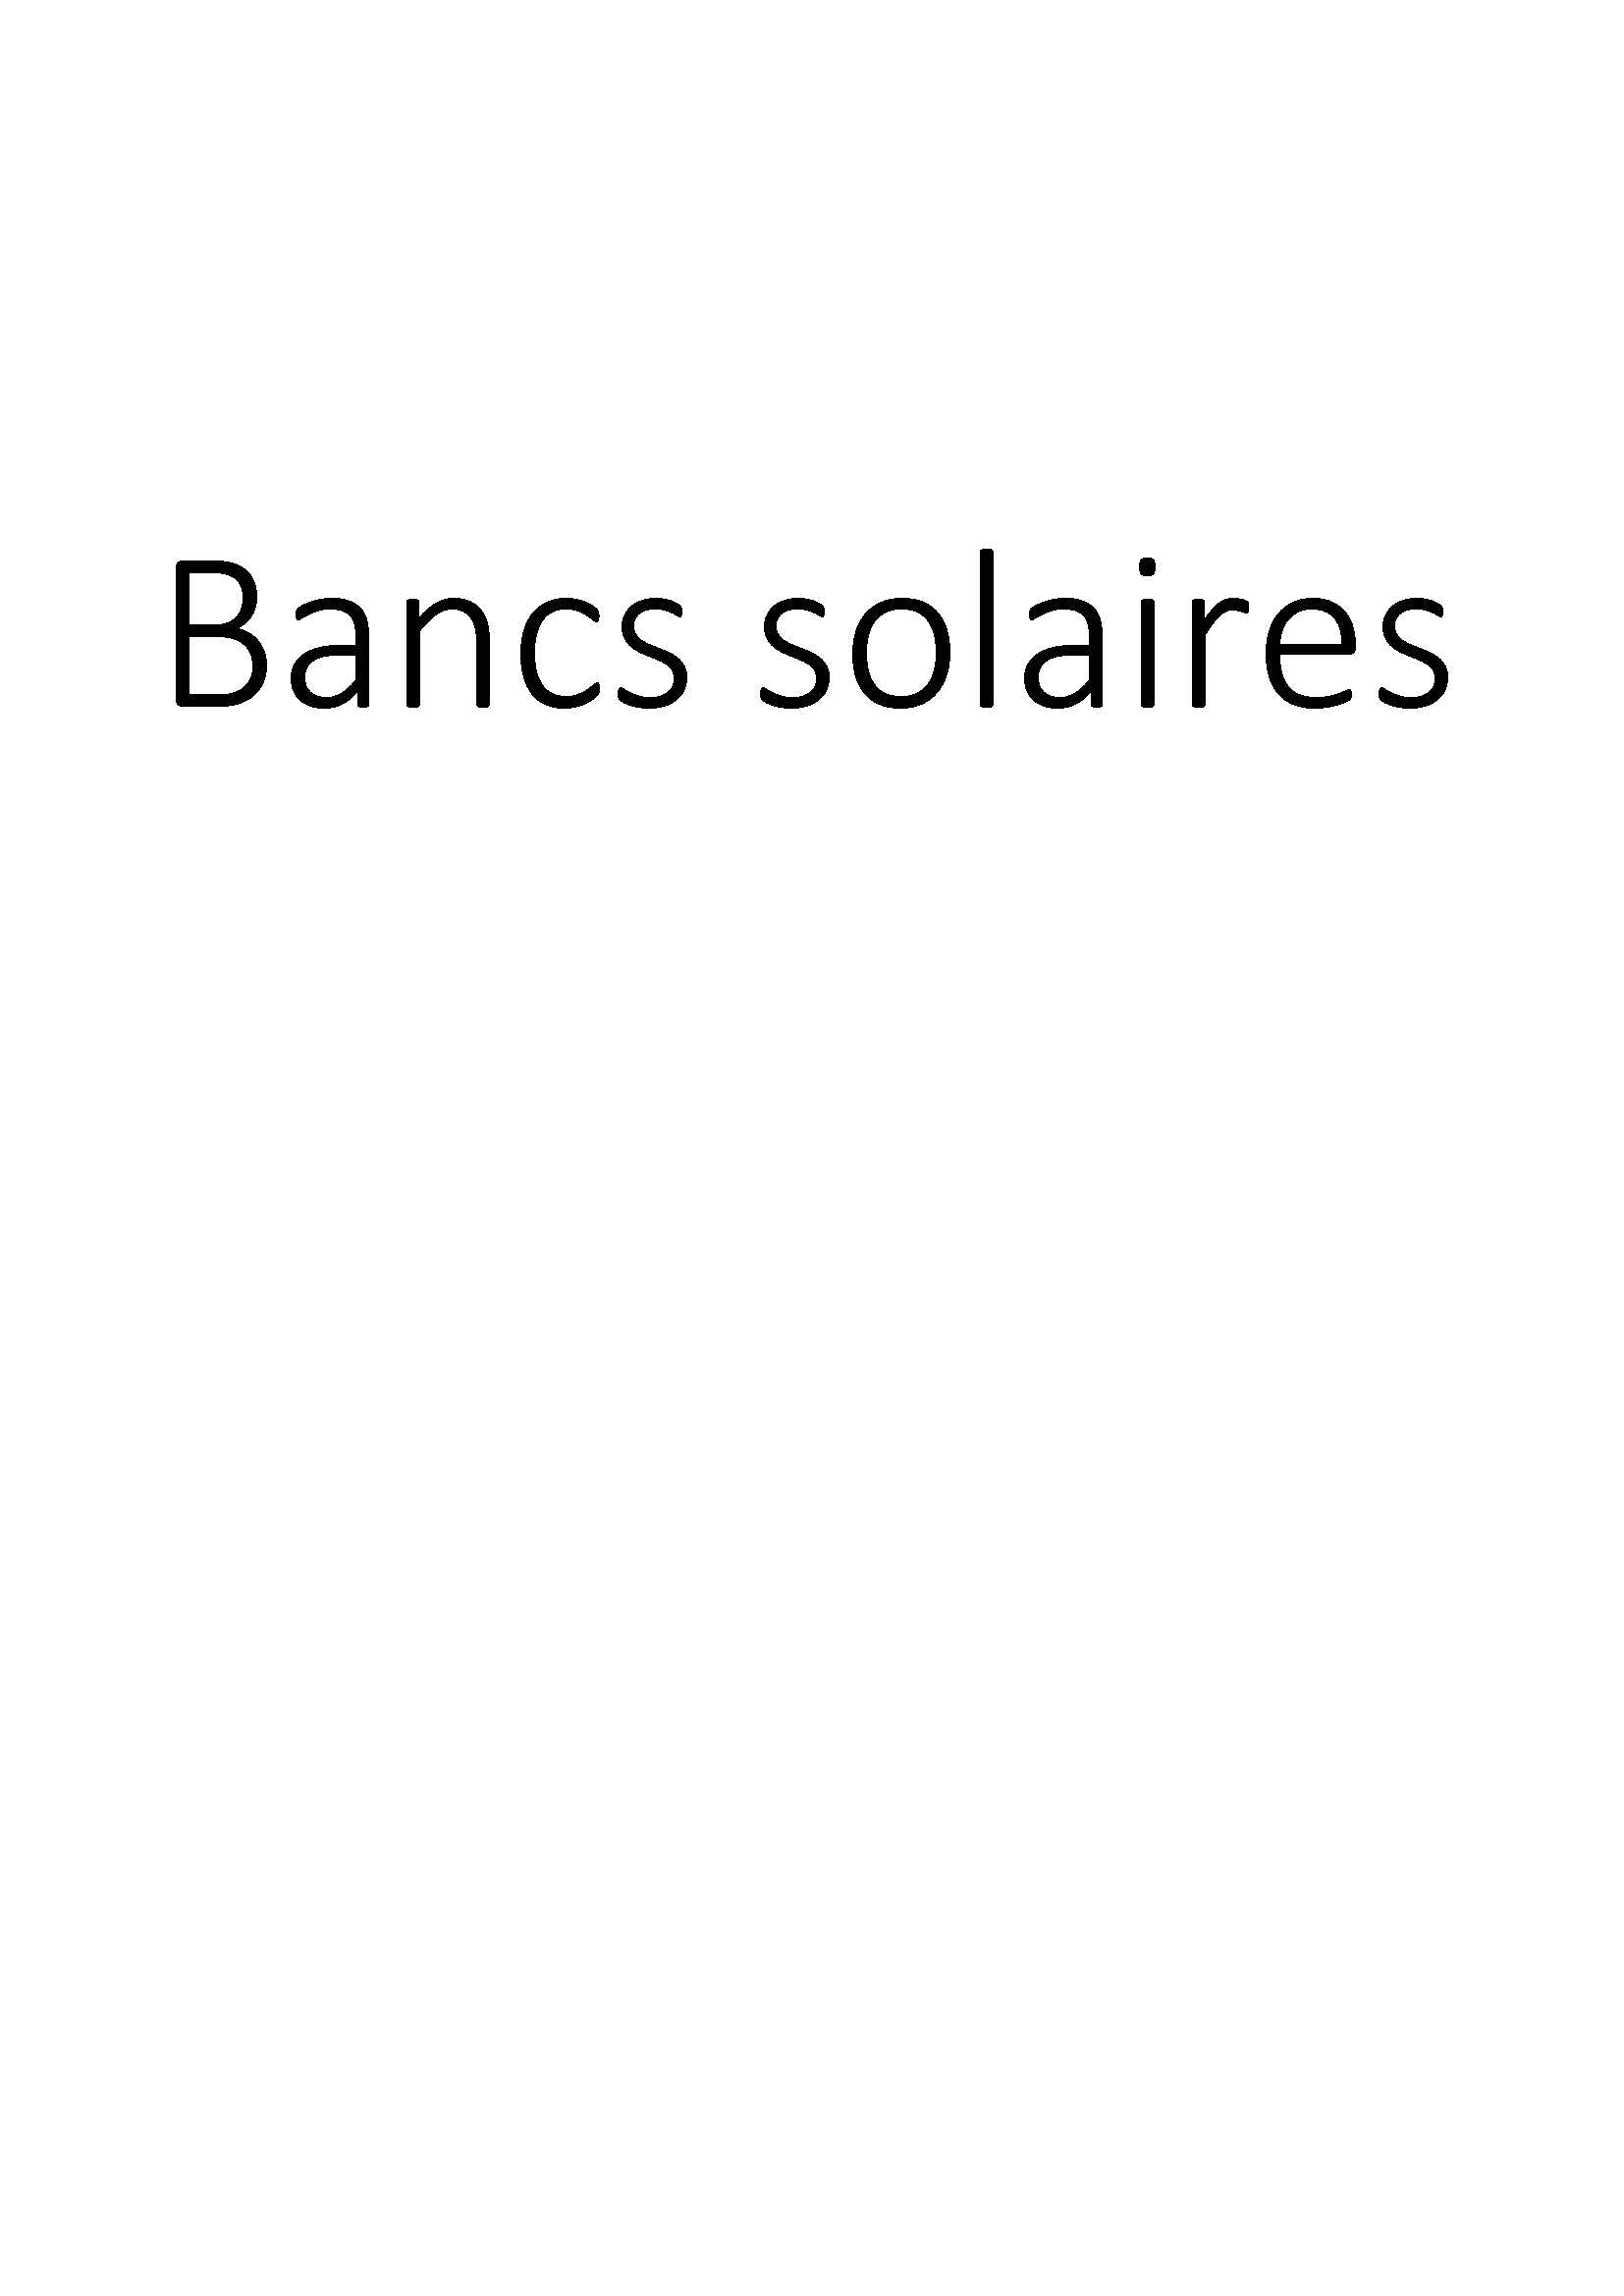 Bancs solaires clicktofournisseur.com